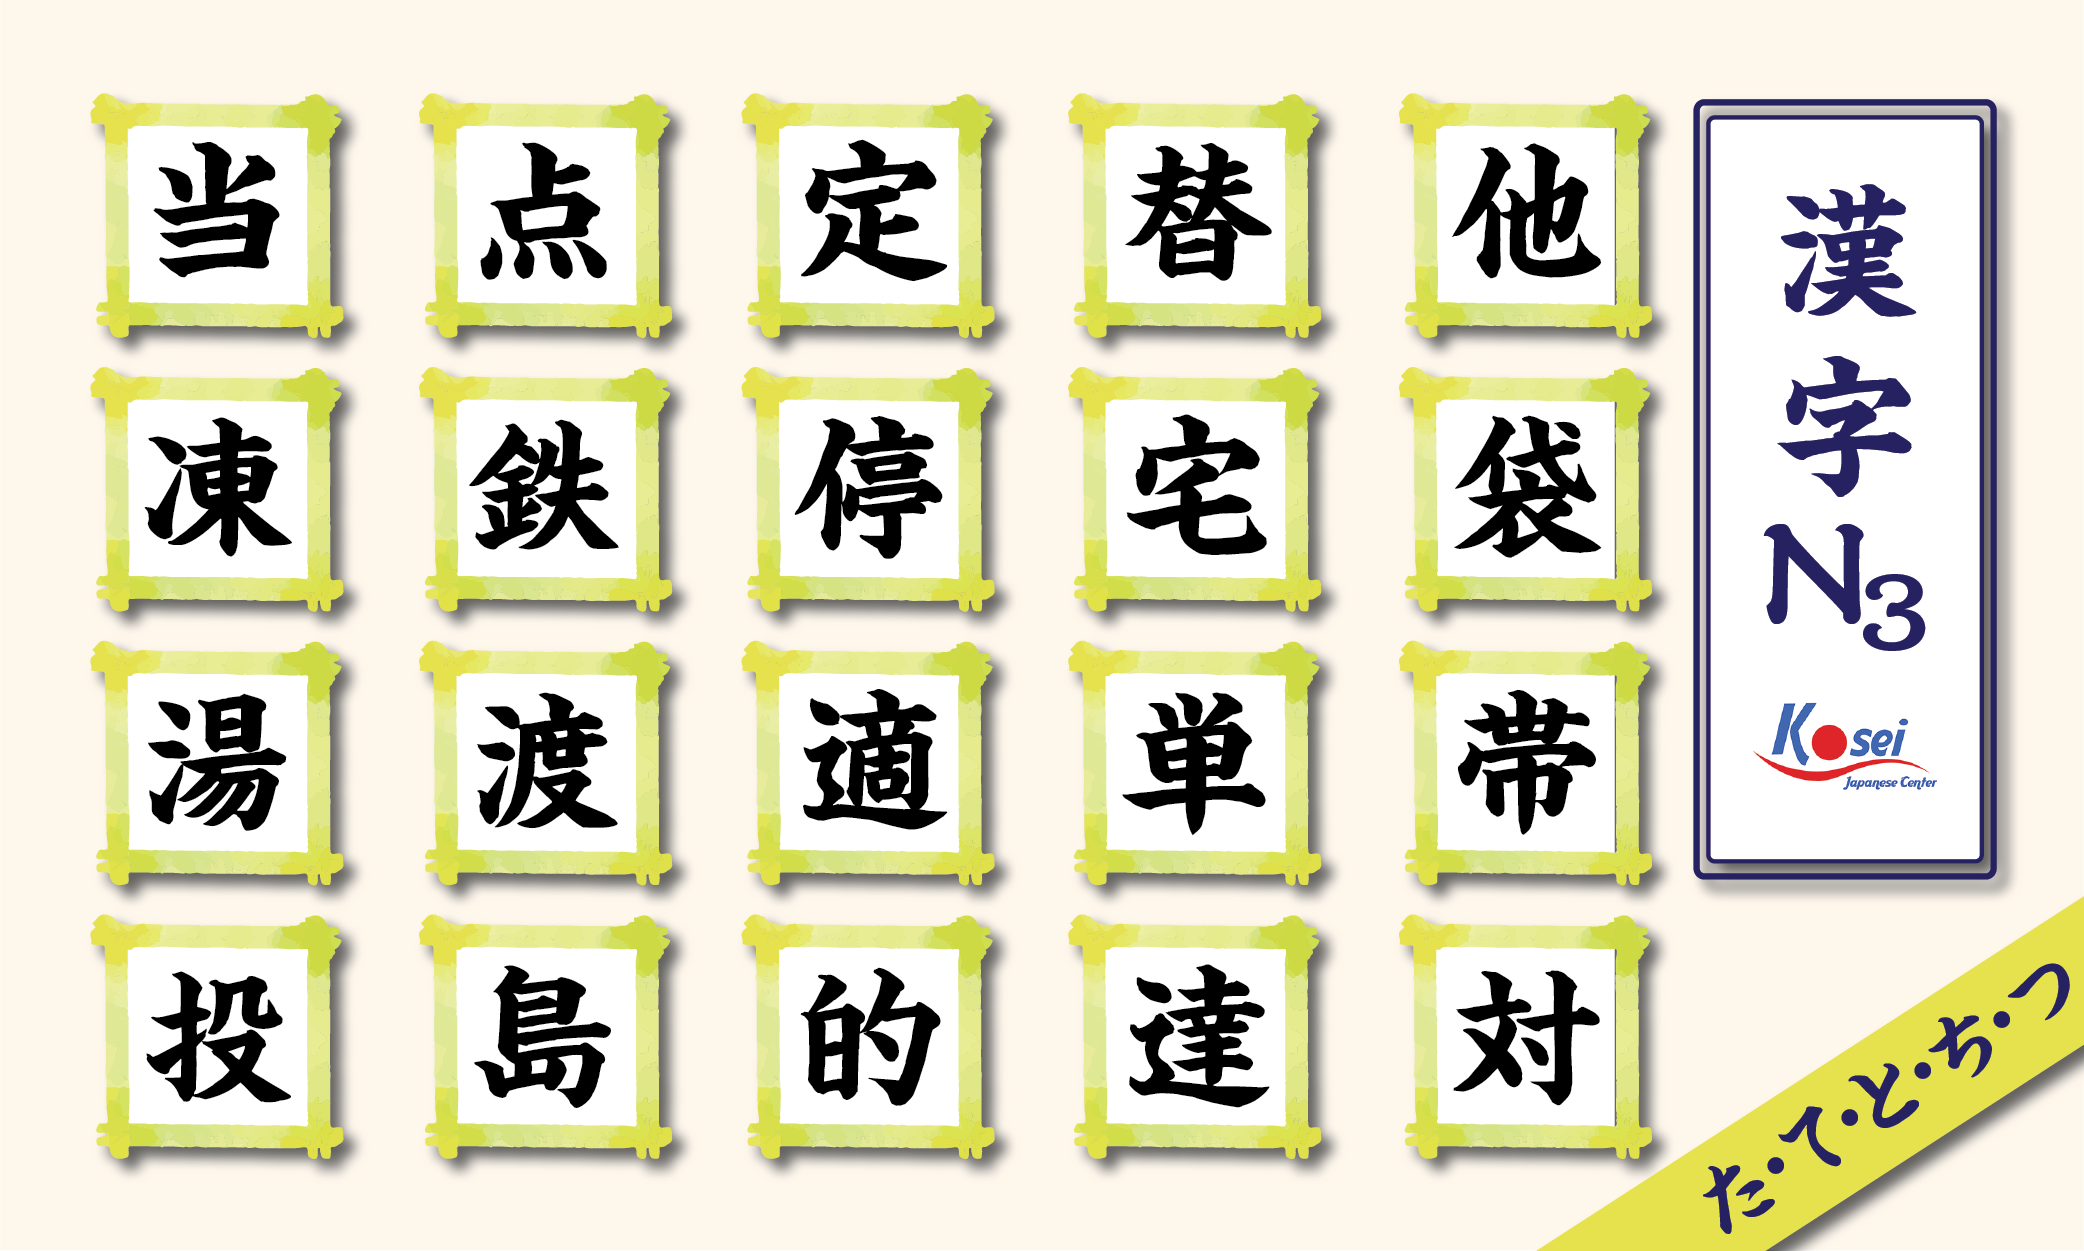 Tổng hợp Kanji N3 theo âm on: hàng T